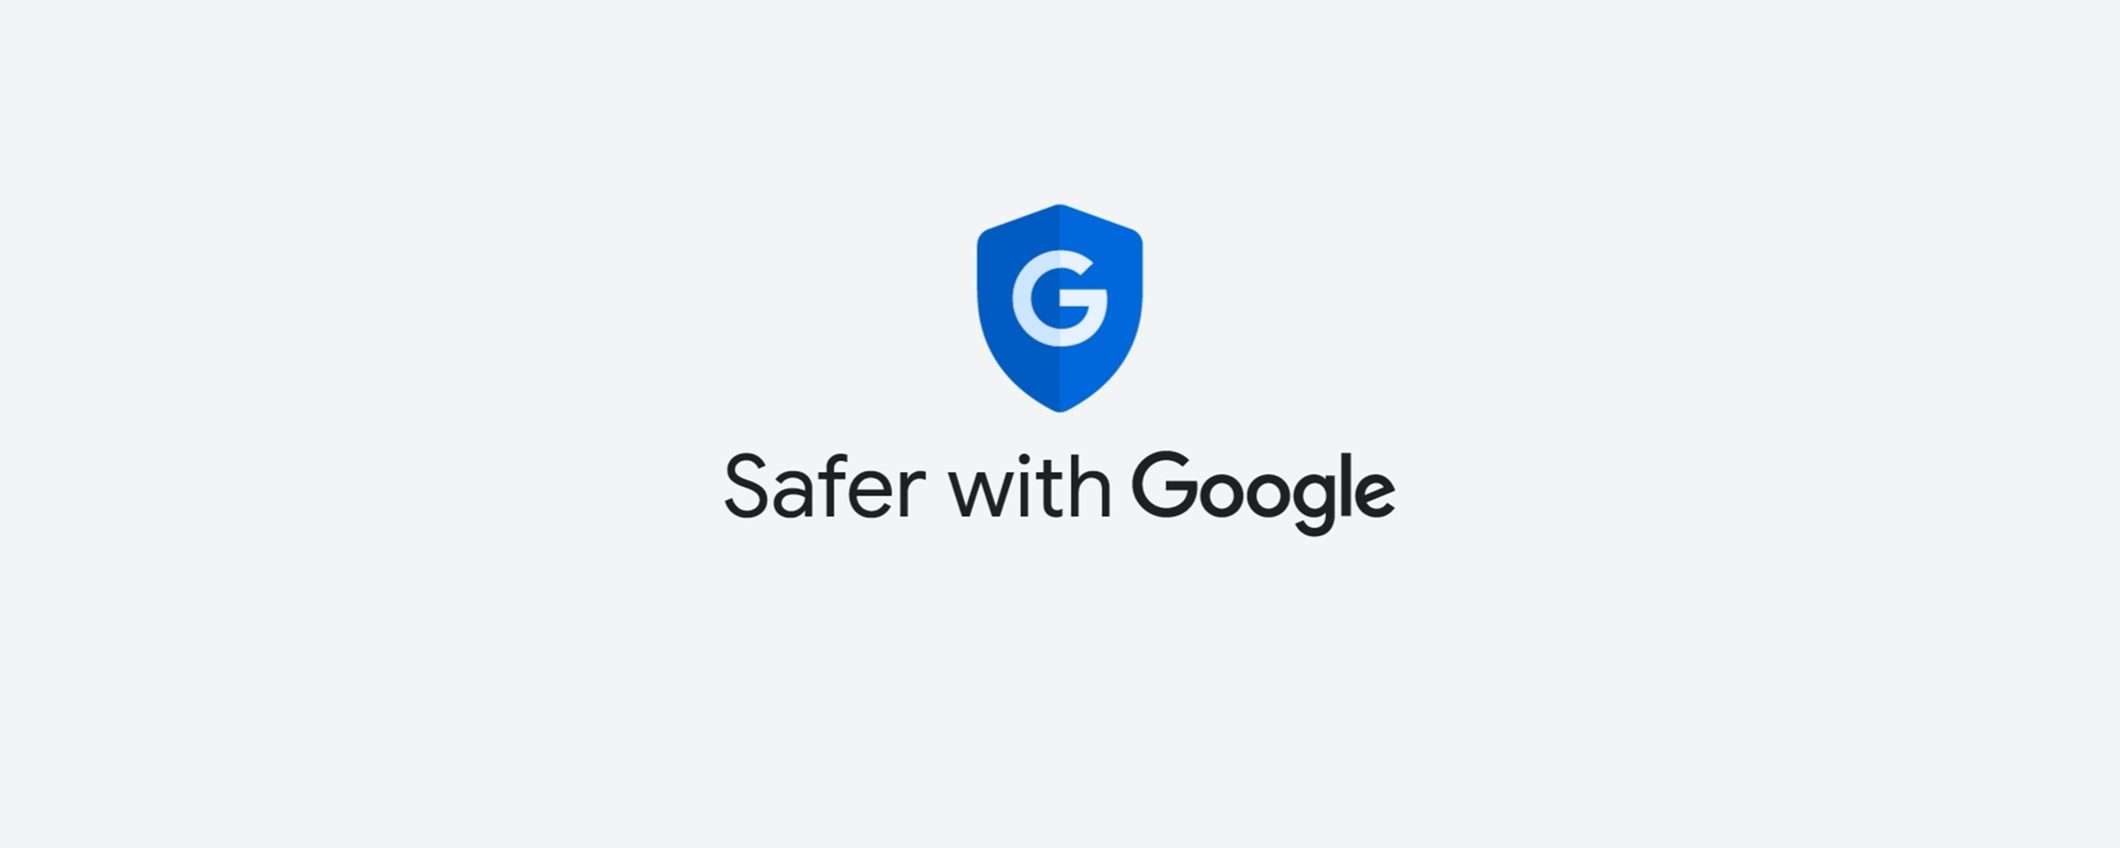 Le novità di Google per la sicurezza online su Android e iOS